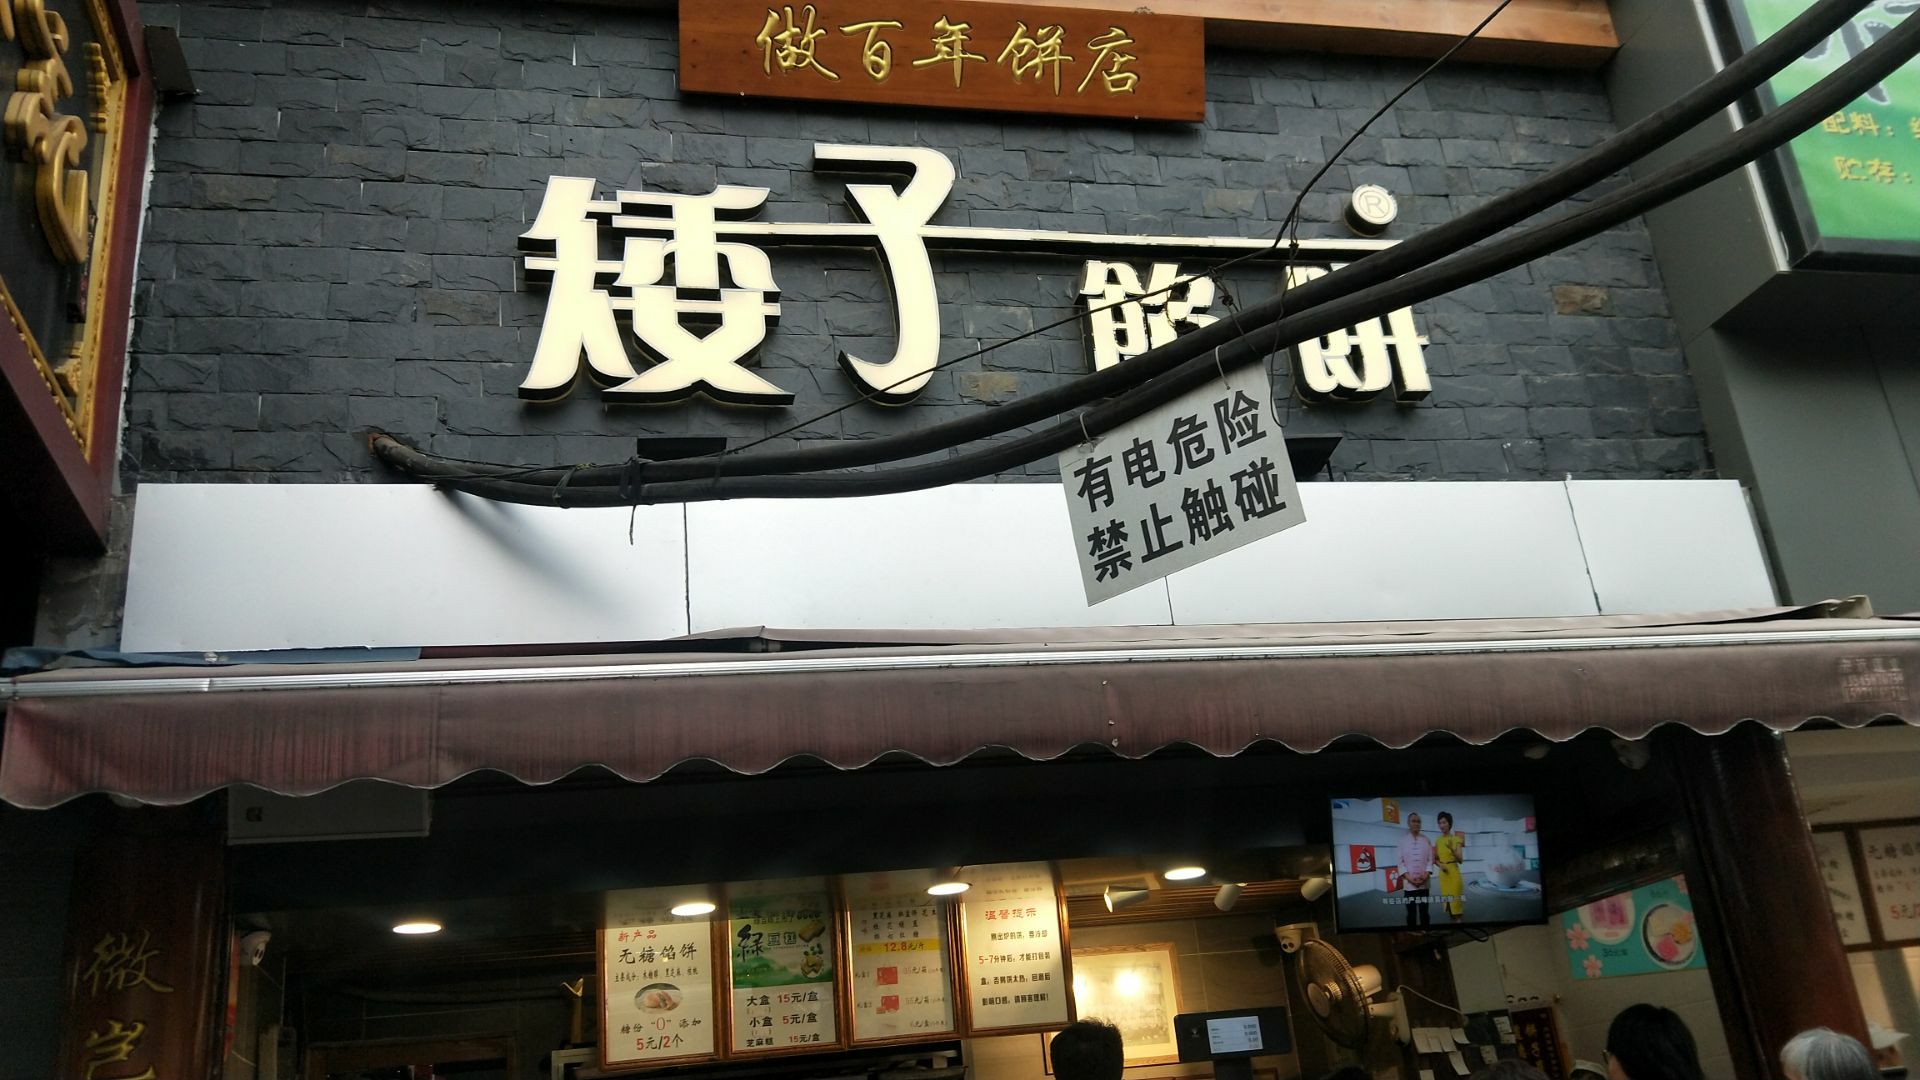 矮子馅饼(大成路店)是司门口小吃中人气很旺的一家店,我去时有排队一